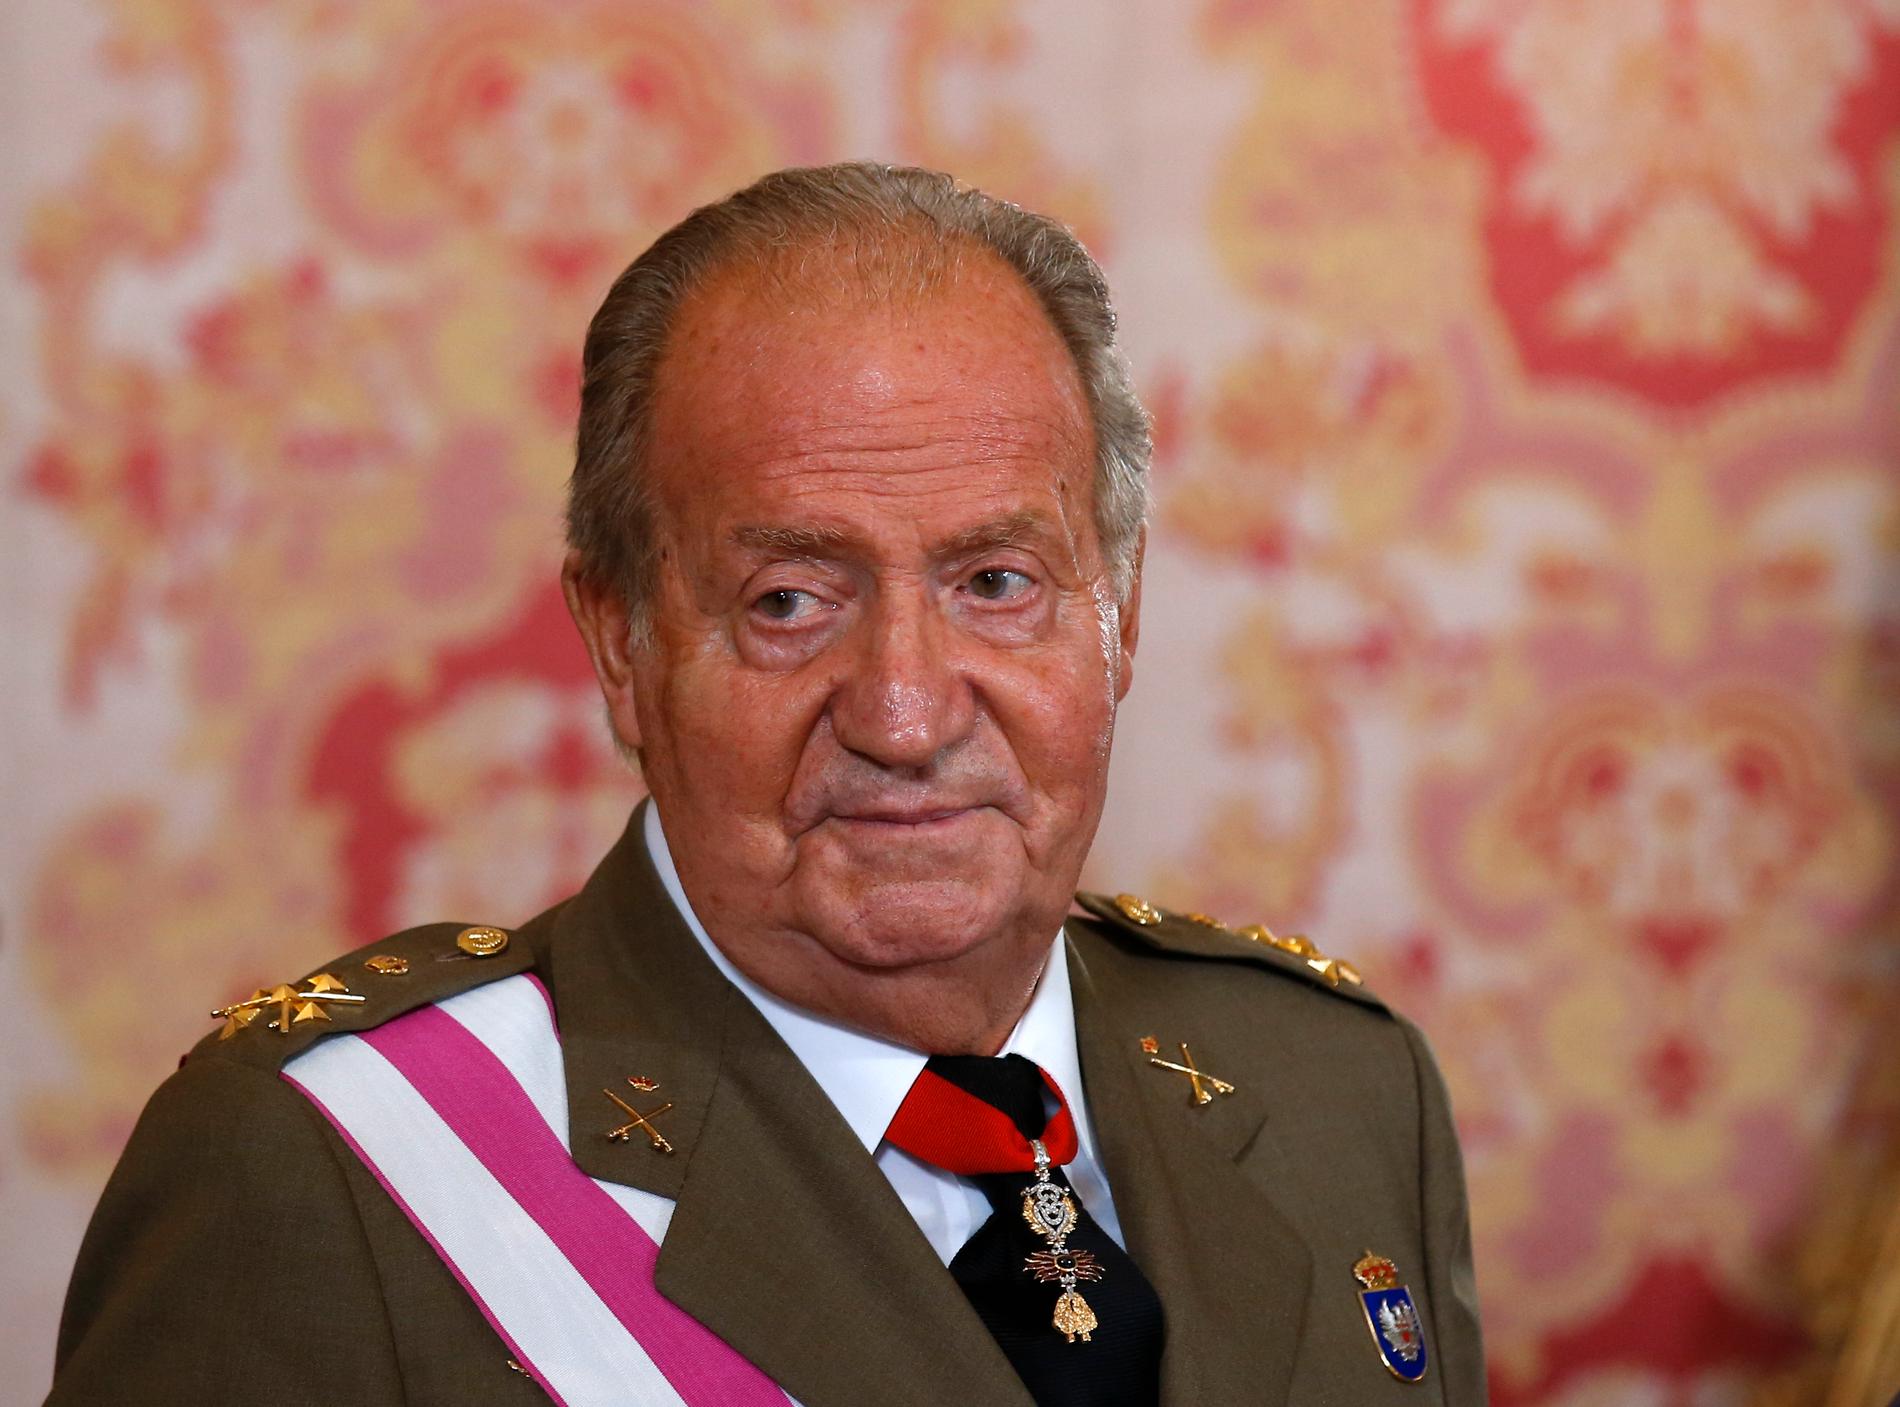 Exkung Juan Carlos hade en älskarinna i många år. Hon fick ca 600 miljoner kronor i gåva av kungen, pengar som Juan Carlos senare ville ha tillbaka. 